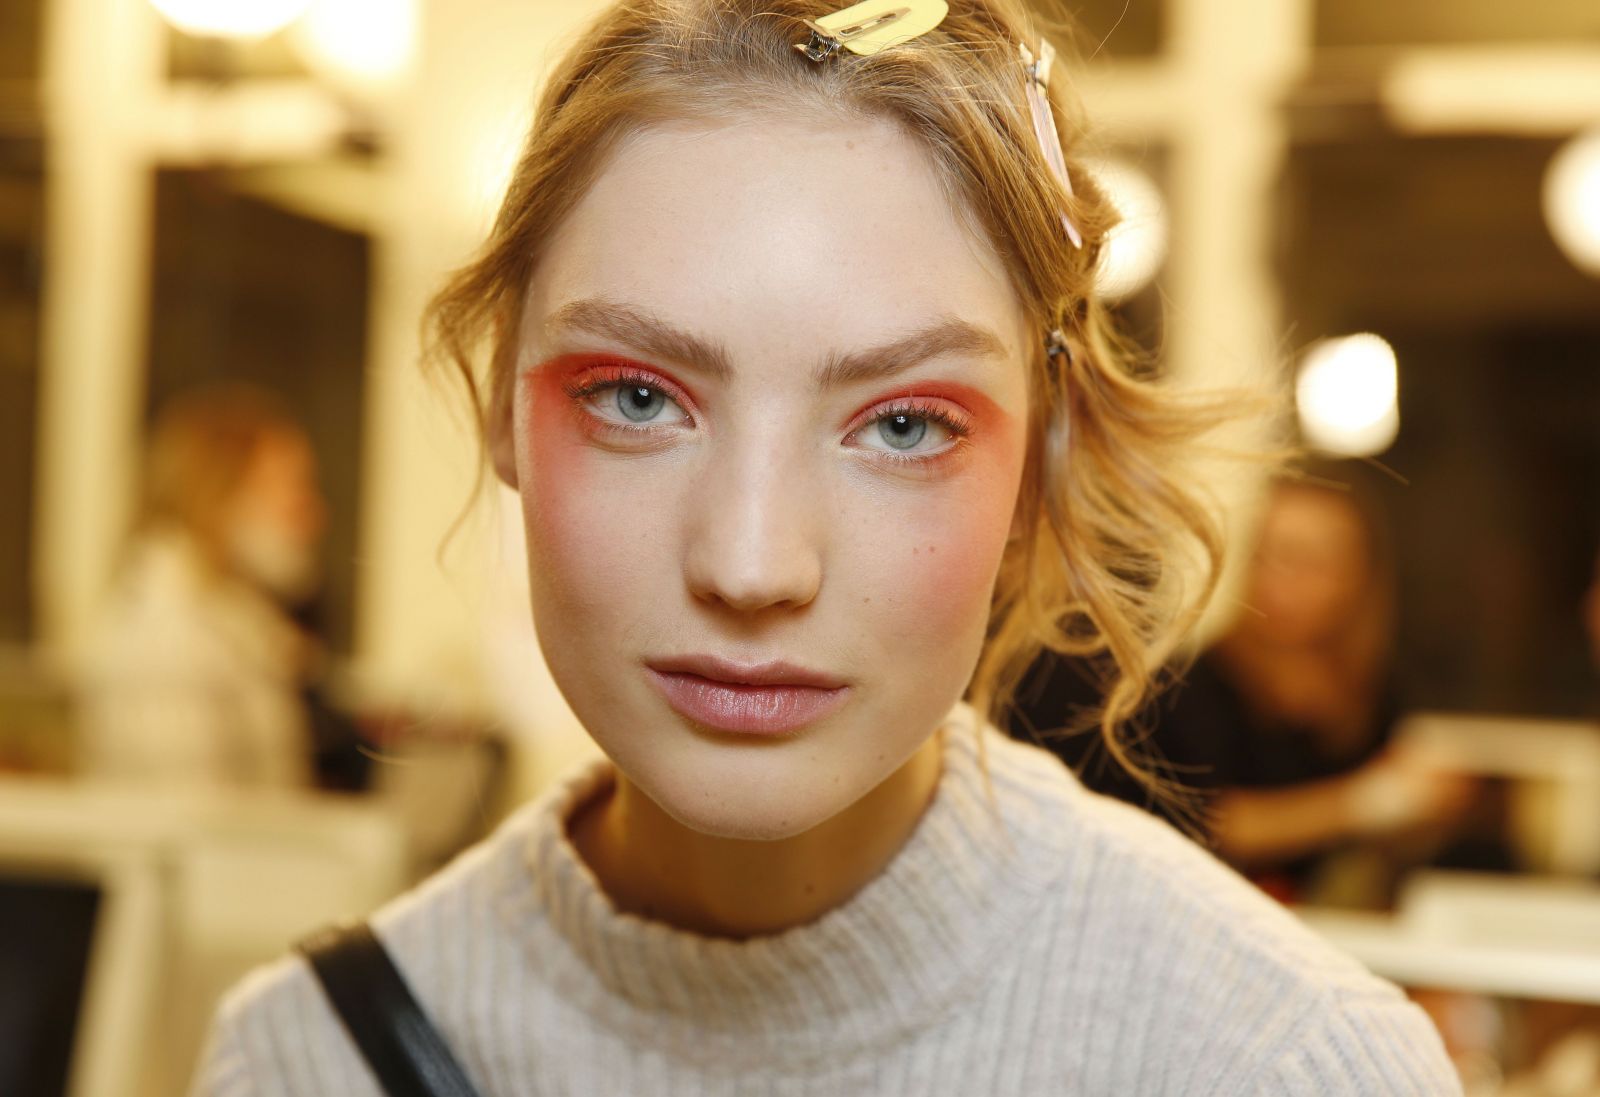 Эффект заплаканных глаз с показа Giorgio Armani Prive стал трендом весны в макияже (ФОТО)